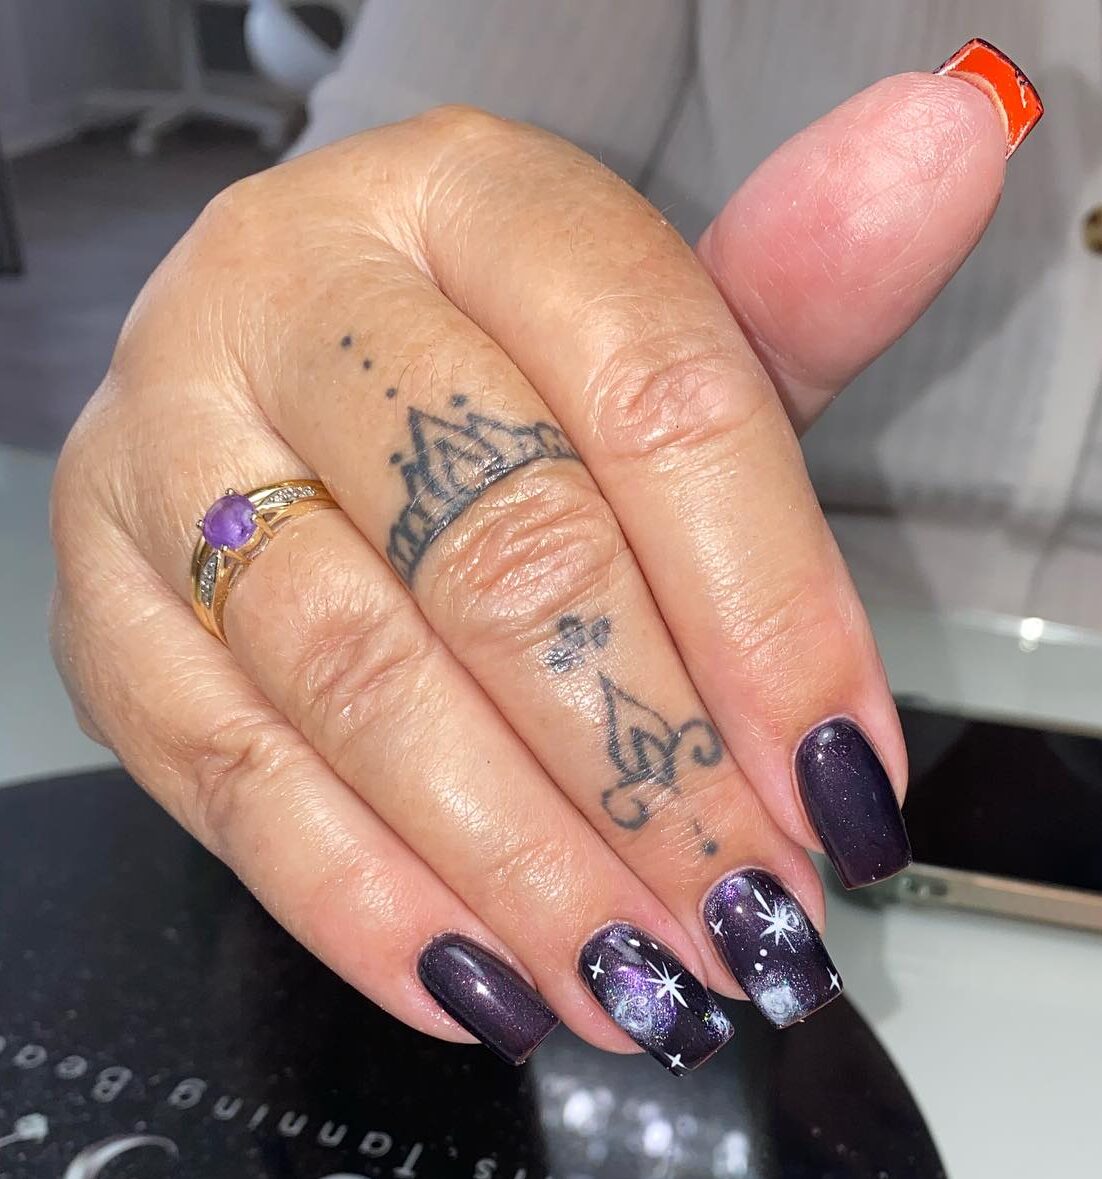 Deep purple nail color with galaxy nail art on medium square nails